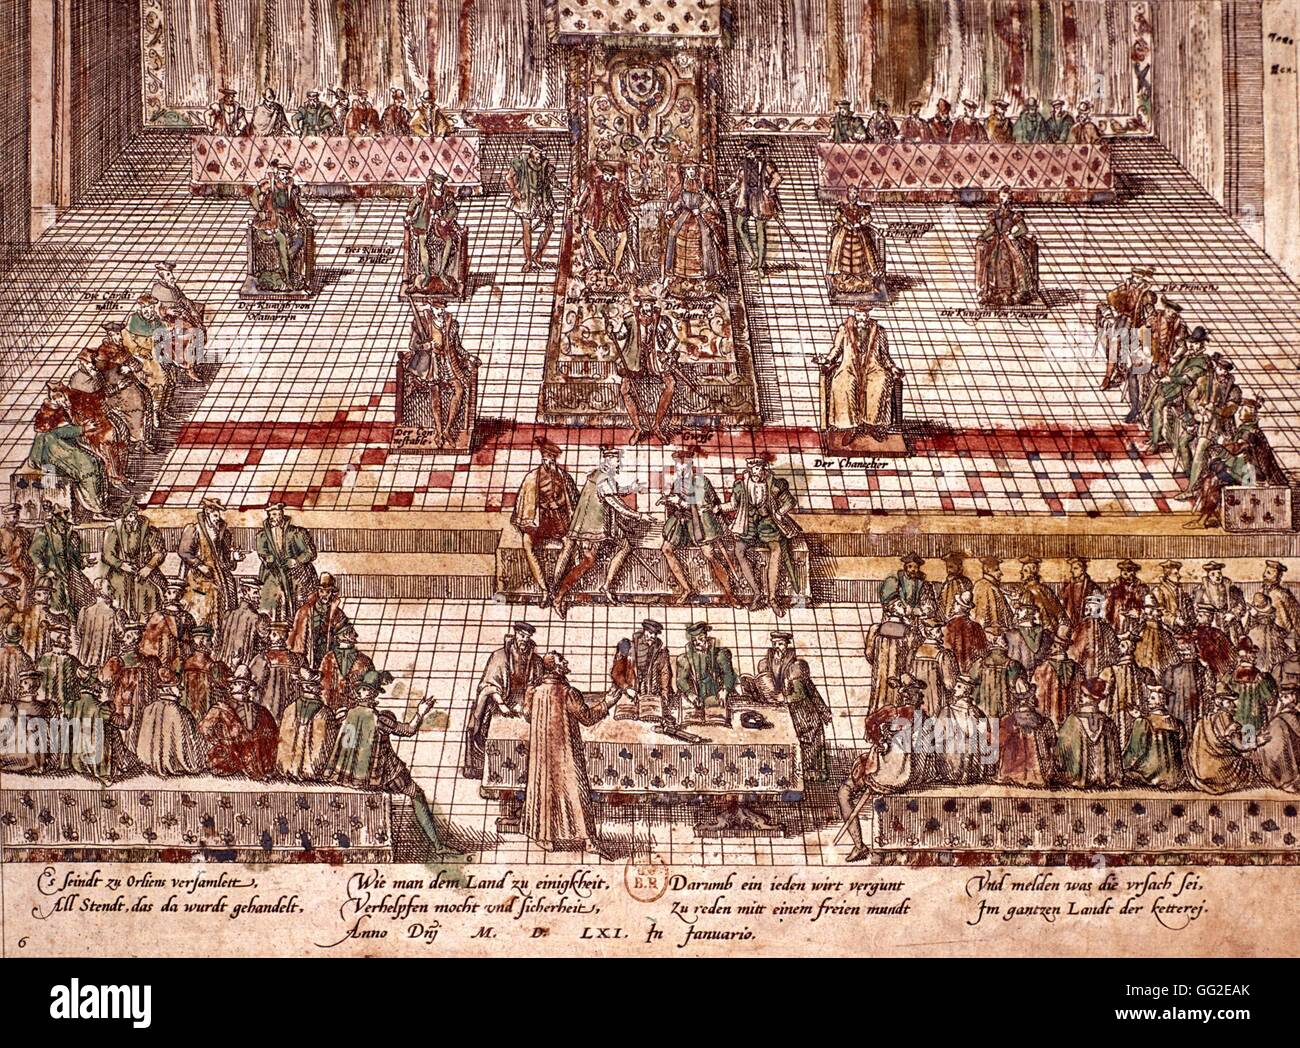 Kolloquium der Poissy, gesammelt von Catherine de Medici und Michel de an, um eine Versöhnung zwischen Katholiken und Protestanten zu bilden. 1561 Frankreich Stockfoto